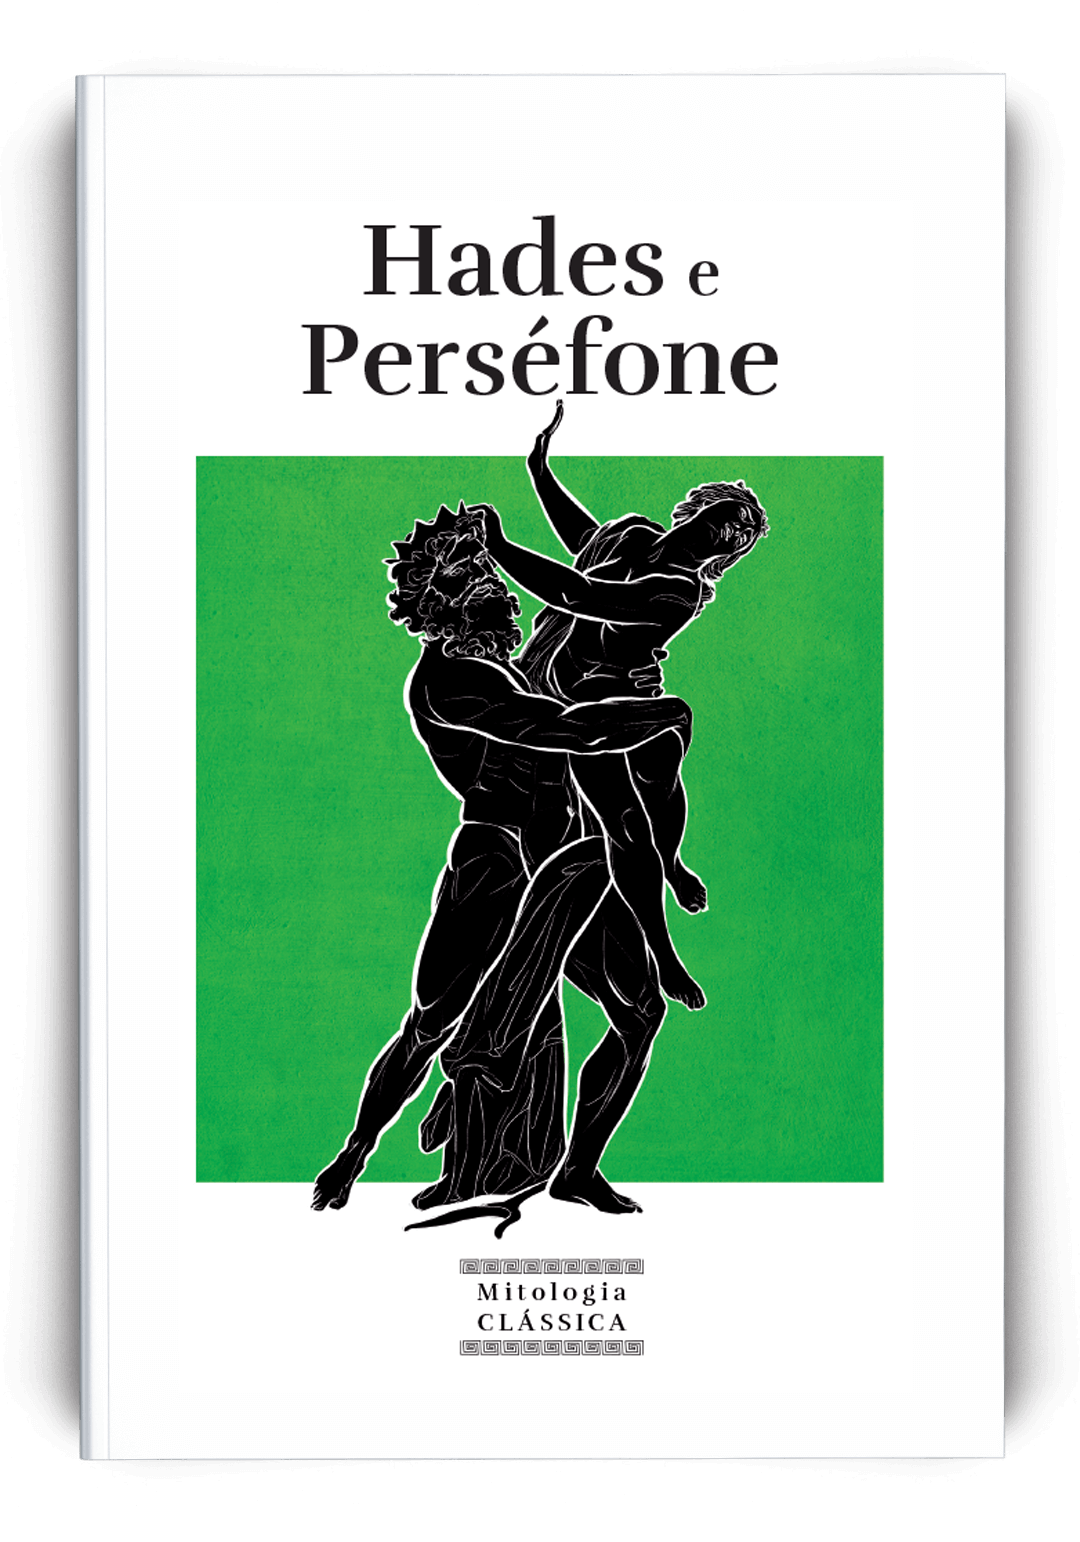 Hades e Perséfone